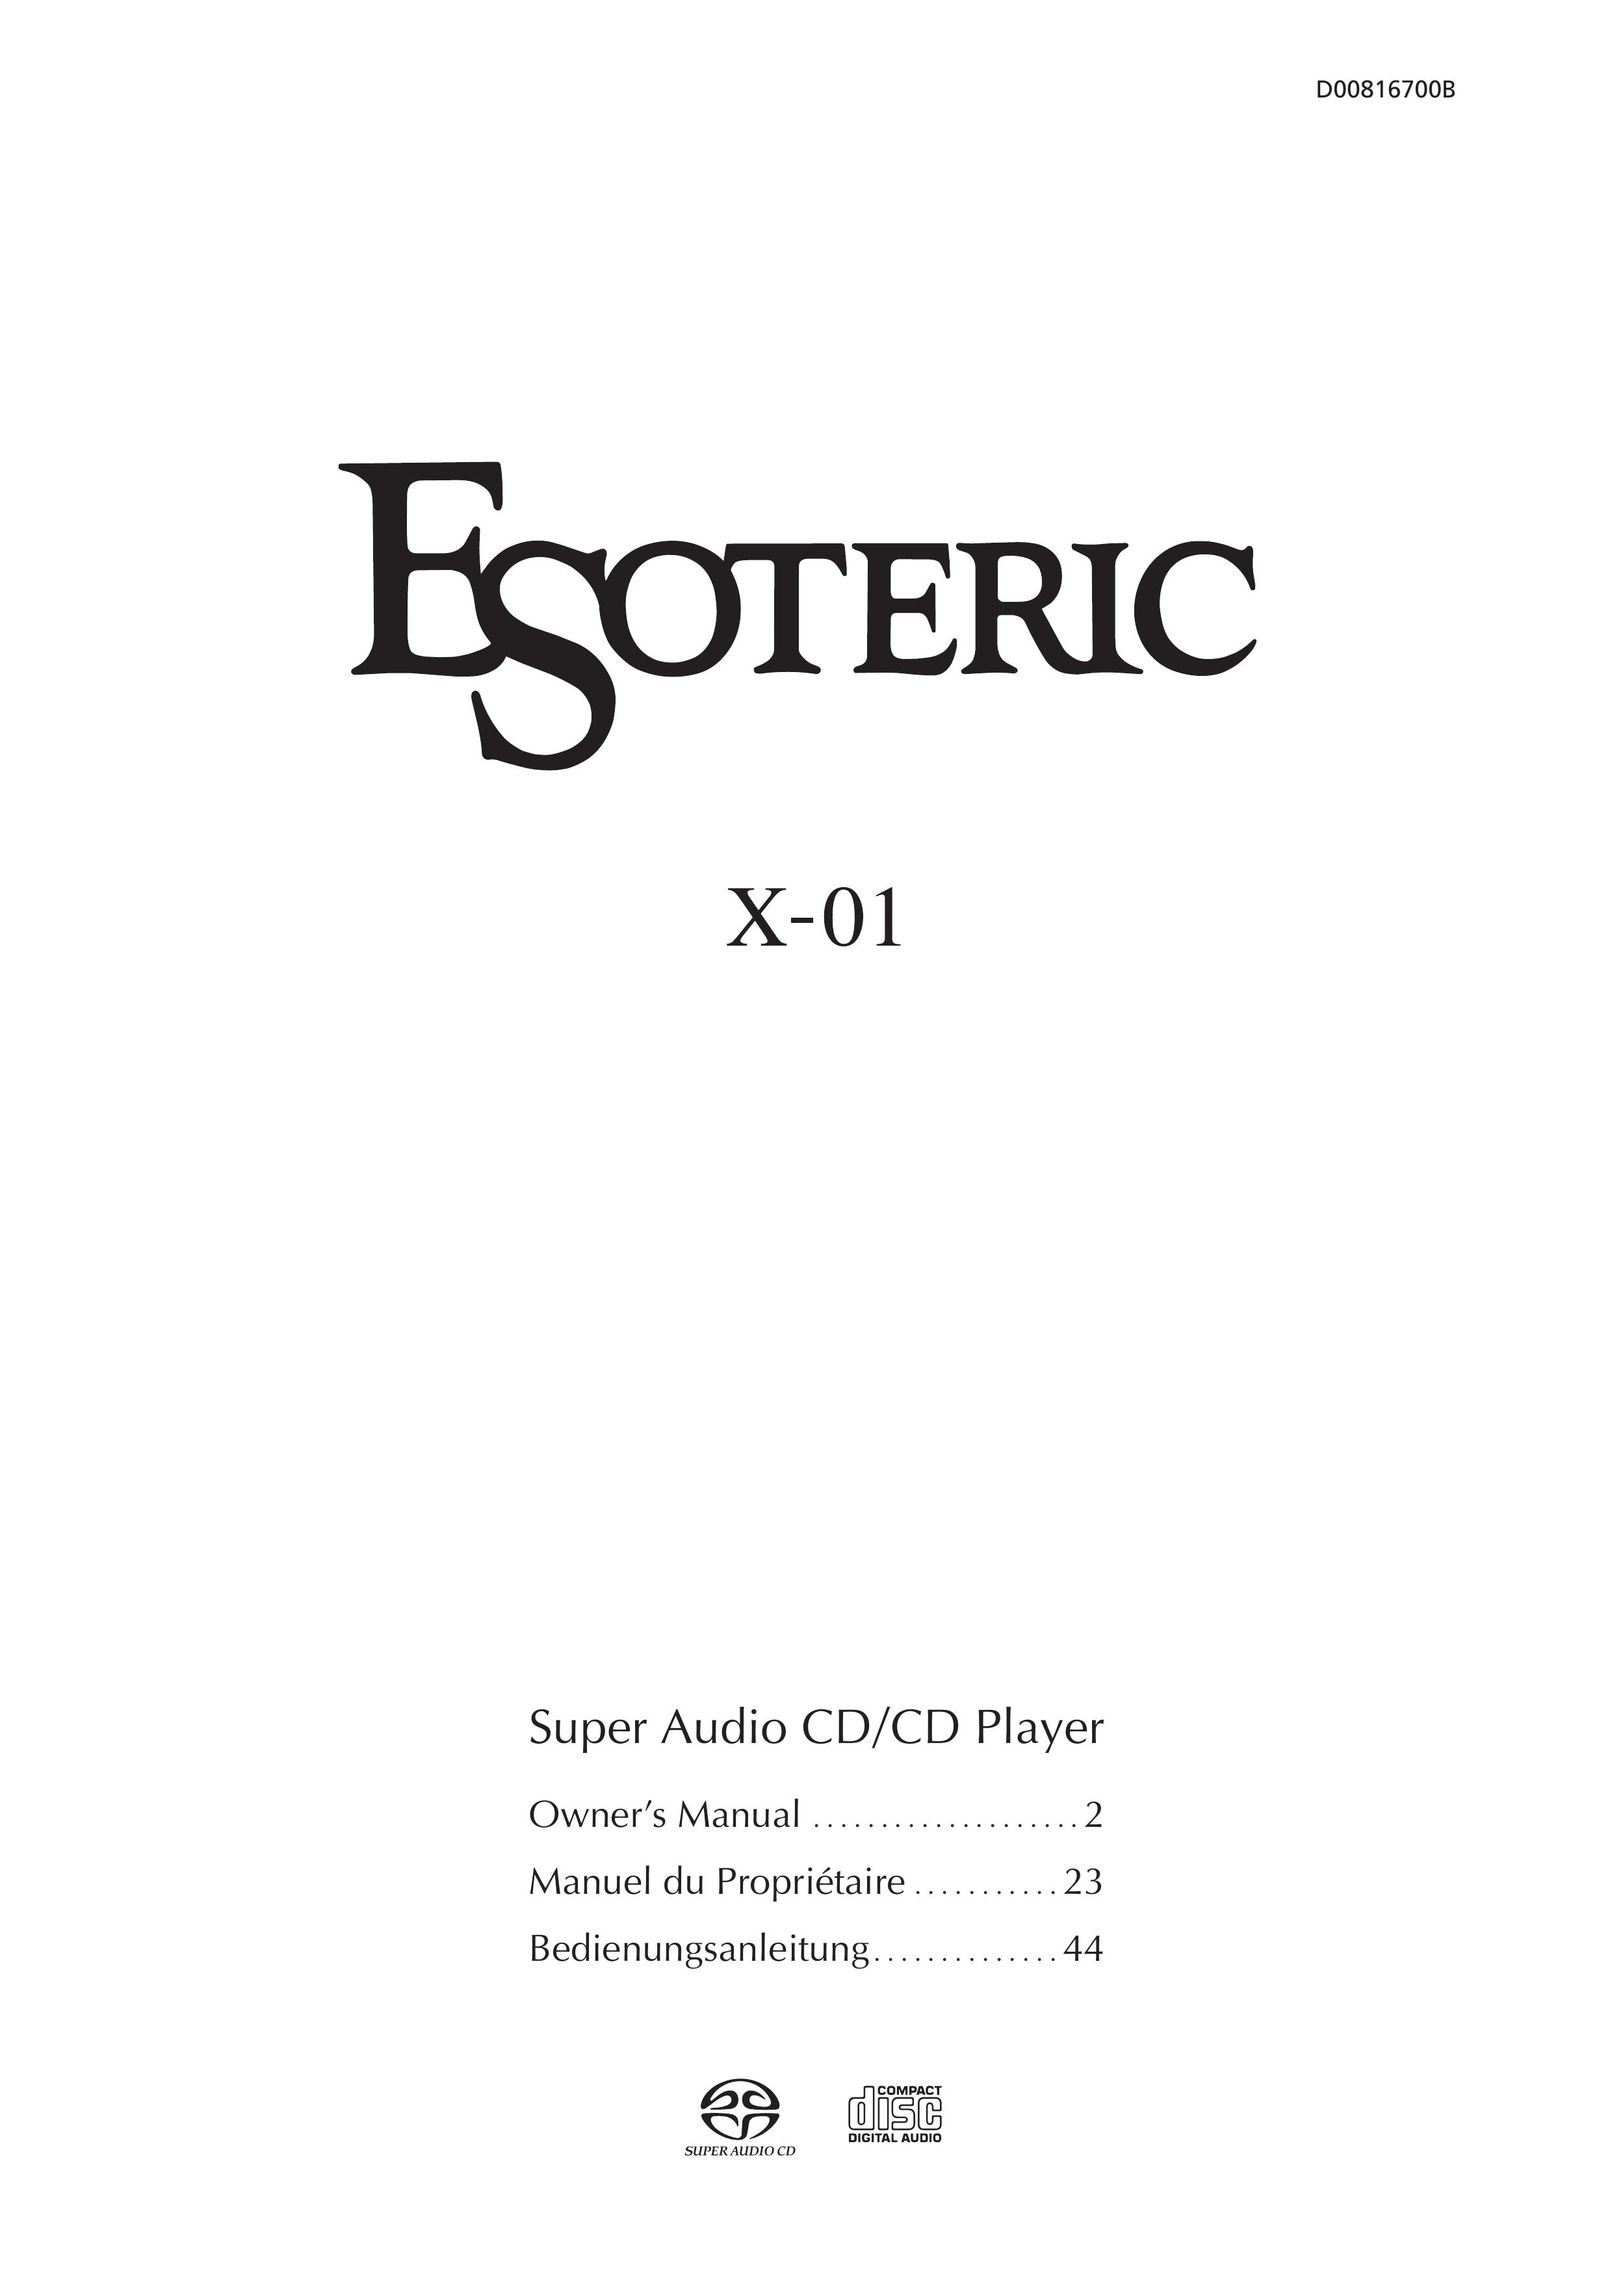 Esoteric D00816700B CD Player User Manual